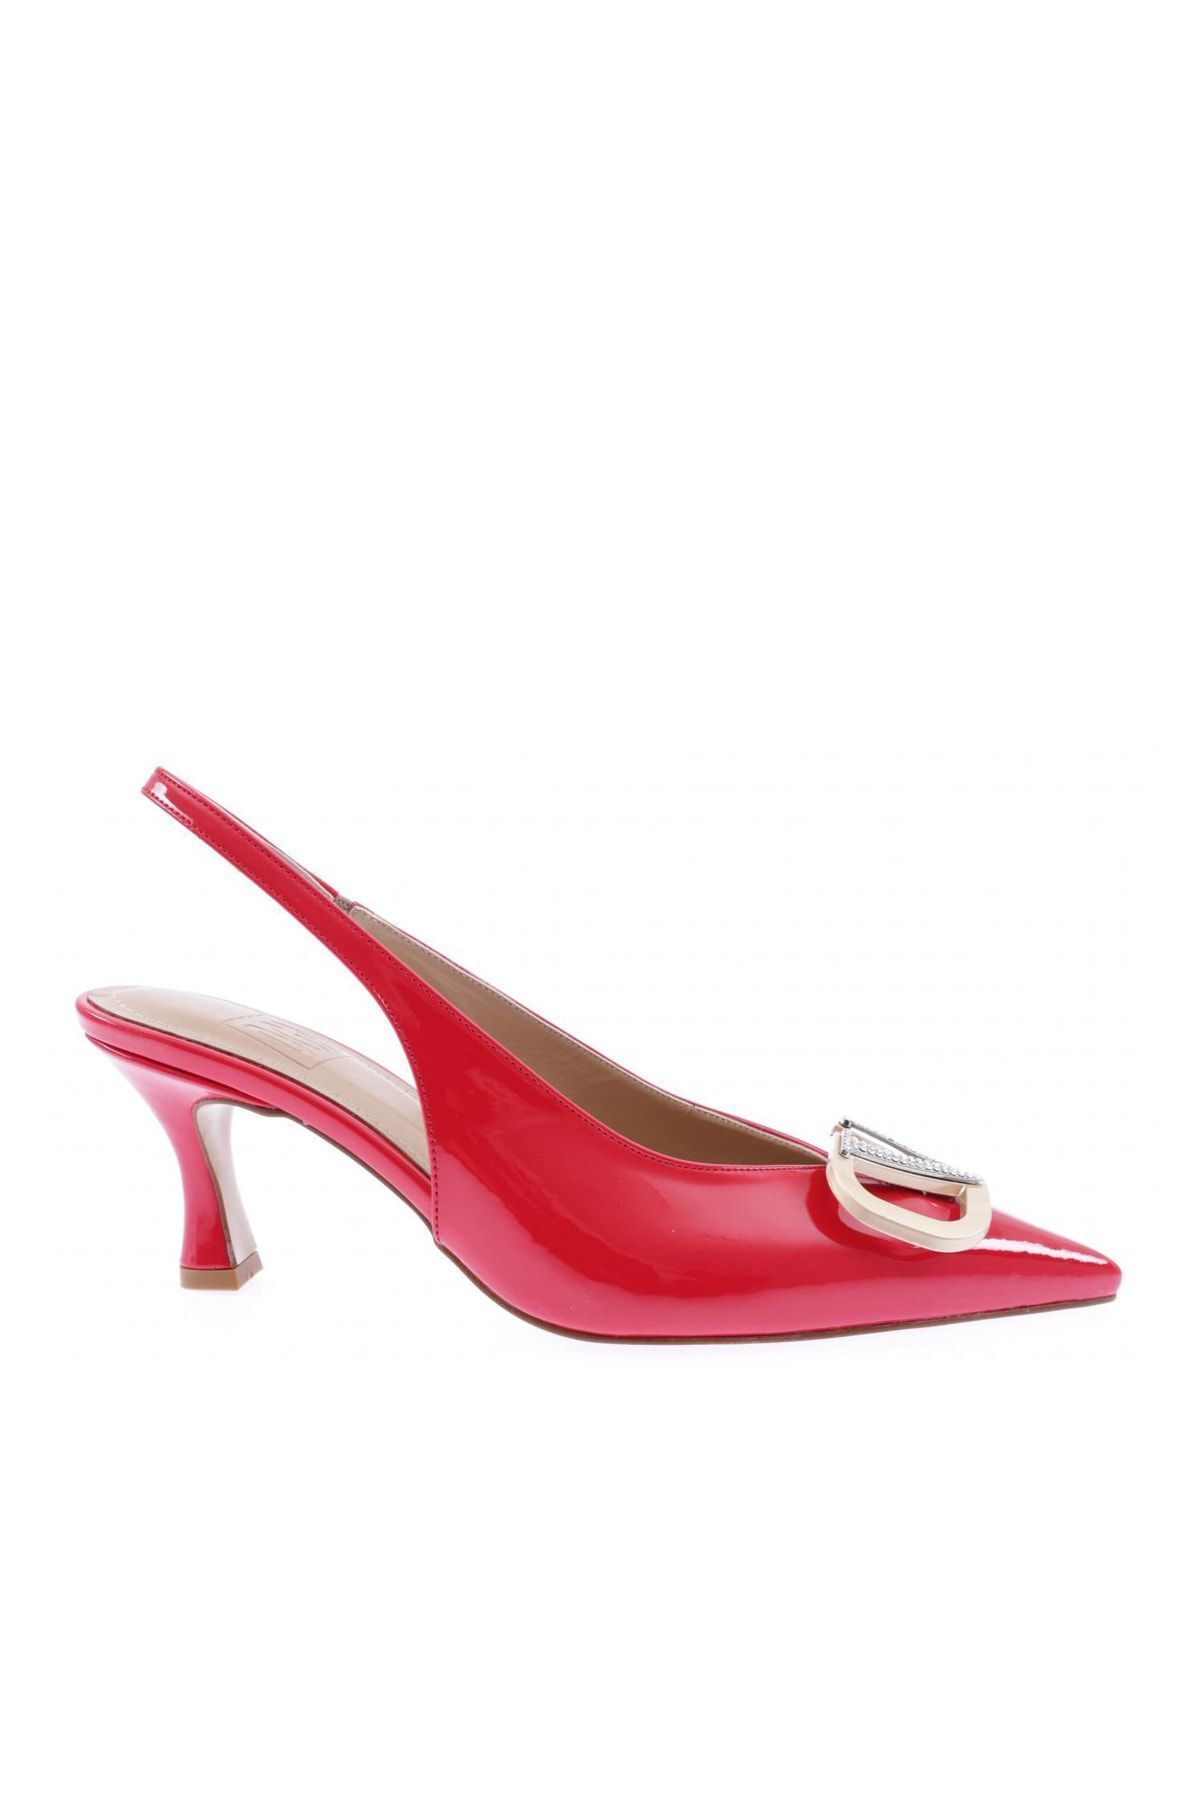 Dgn 2055-22y Kadın Sivri Burun Kristal Taş Tokalı Topuklu Ayakkabı Kırmızı Rugan